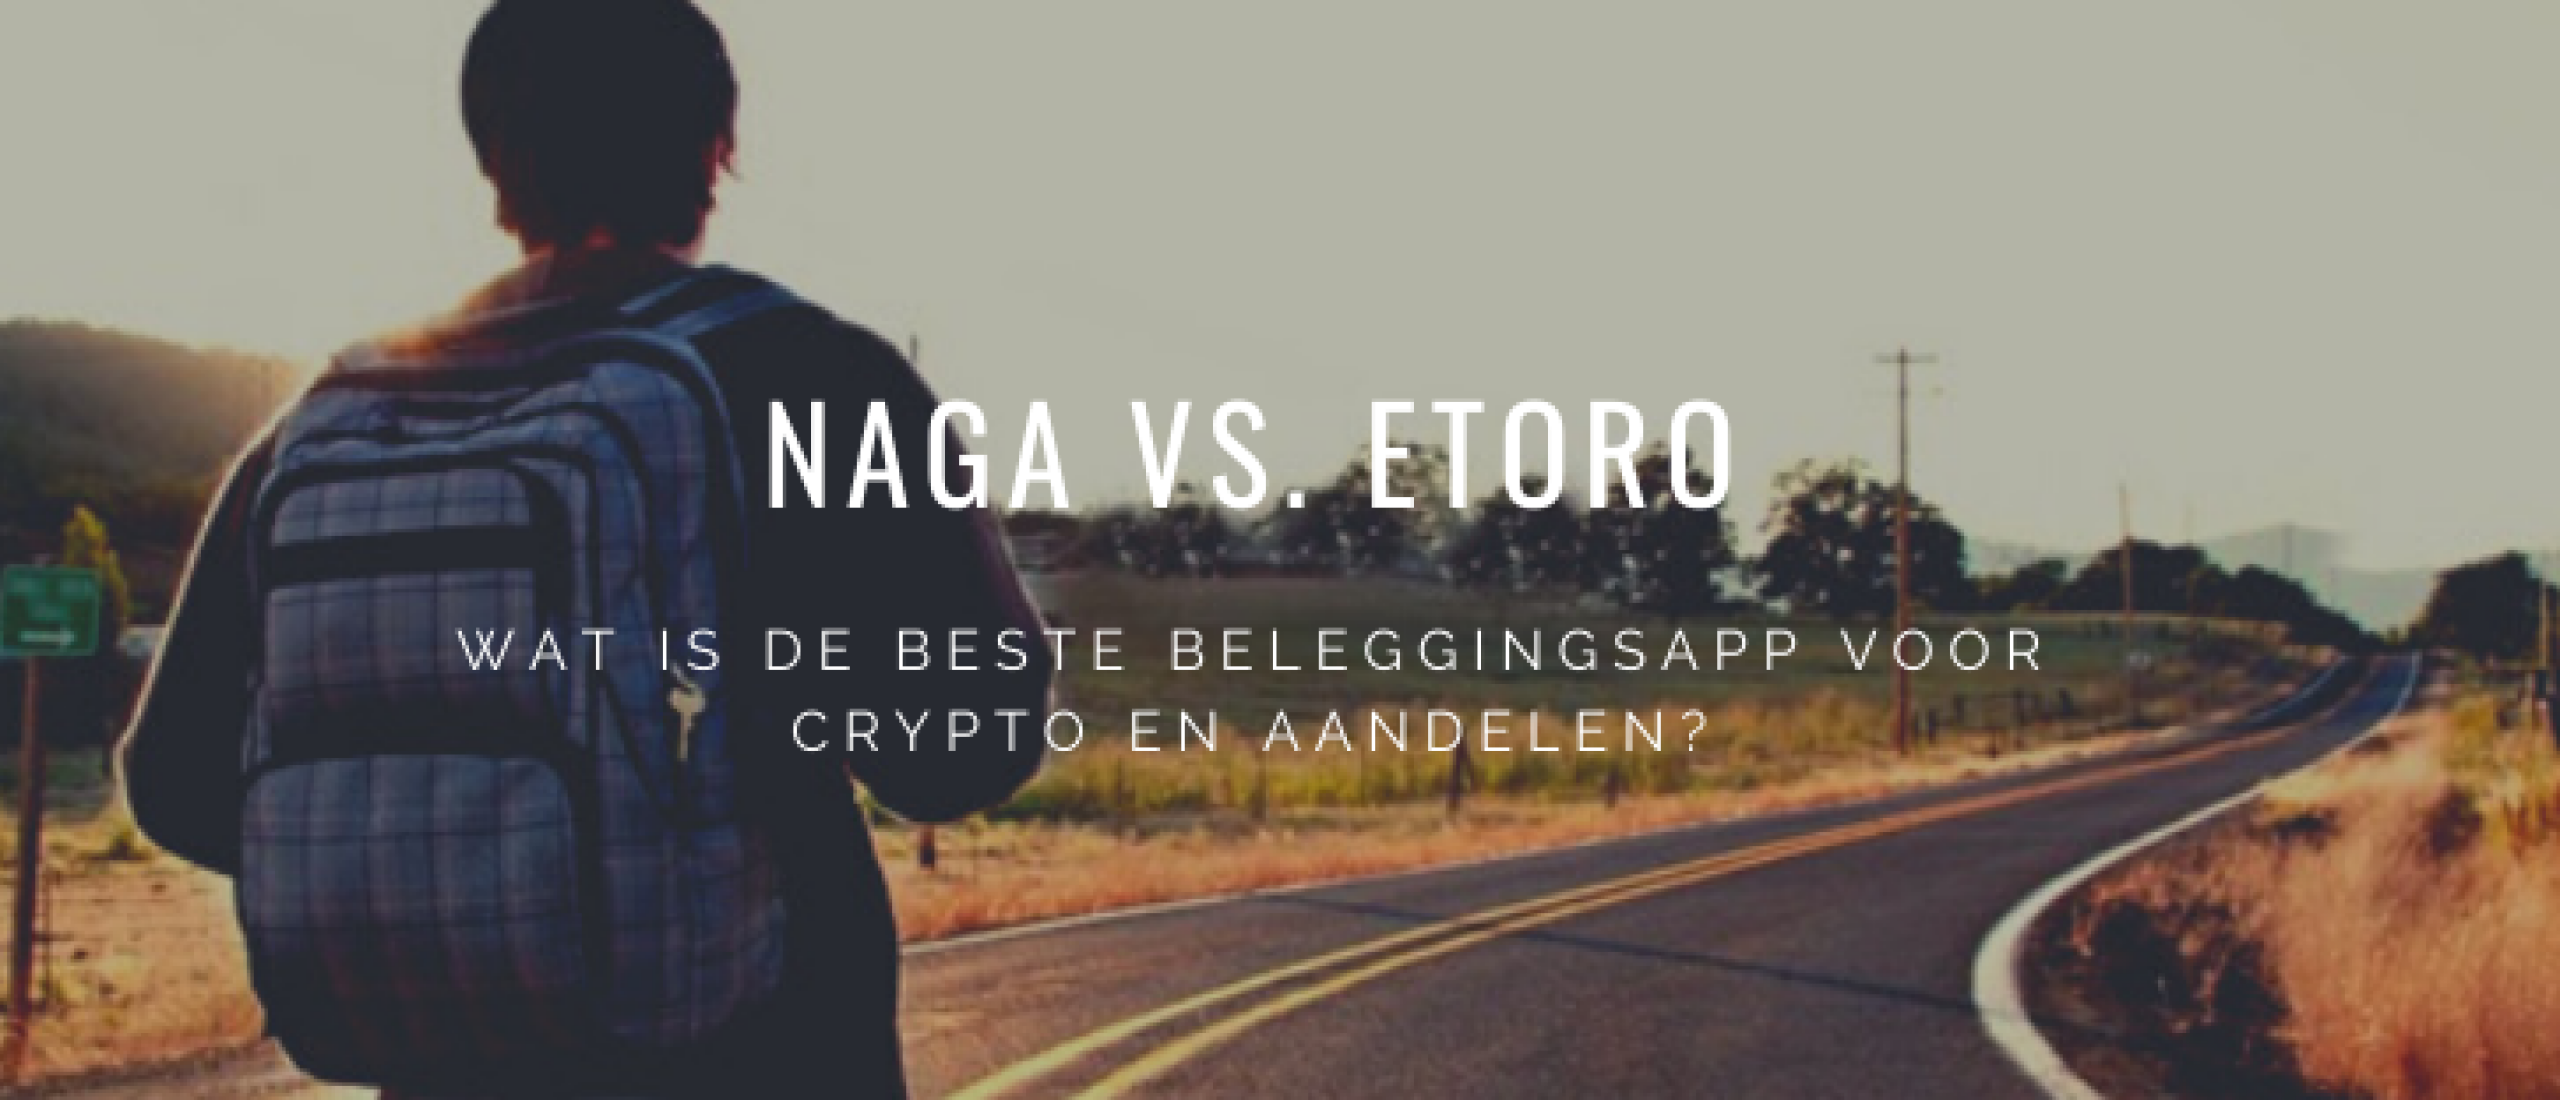 etoro-vs-naga-vergelijken